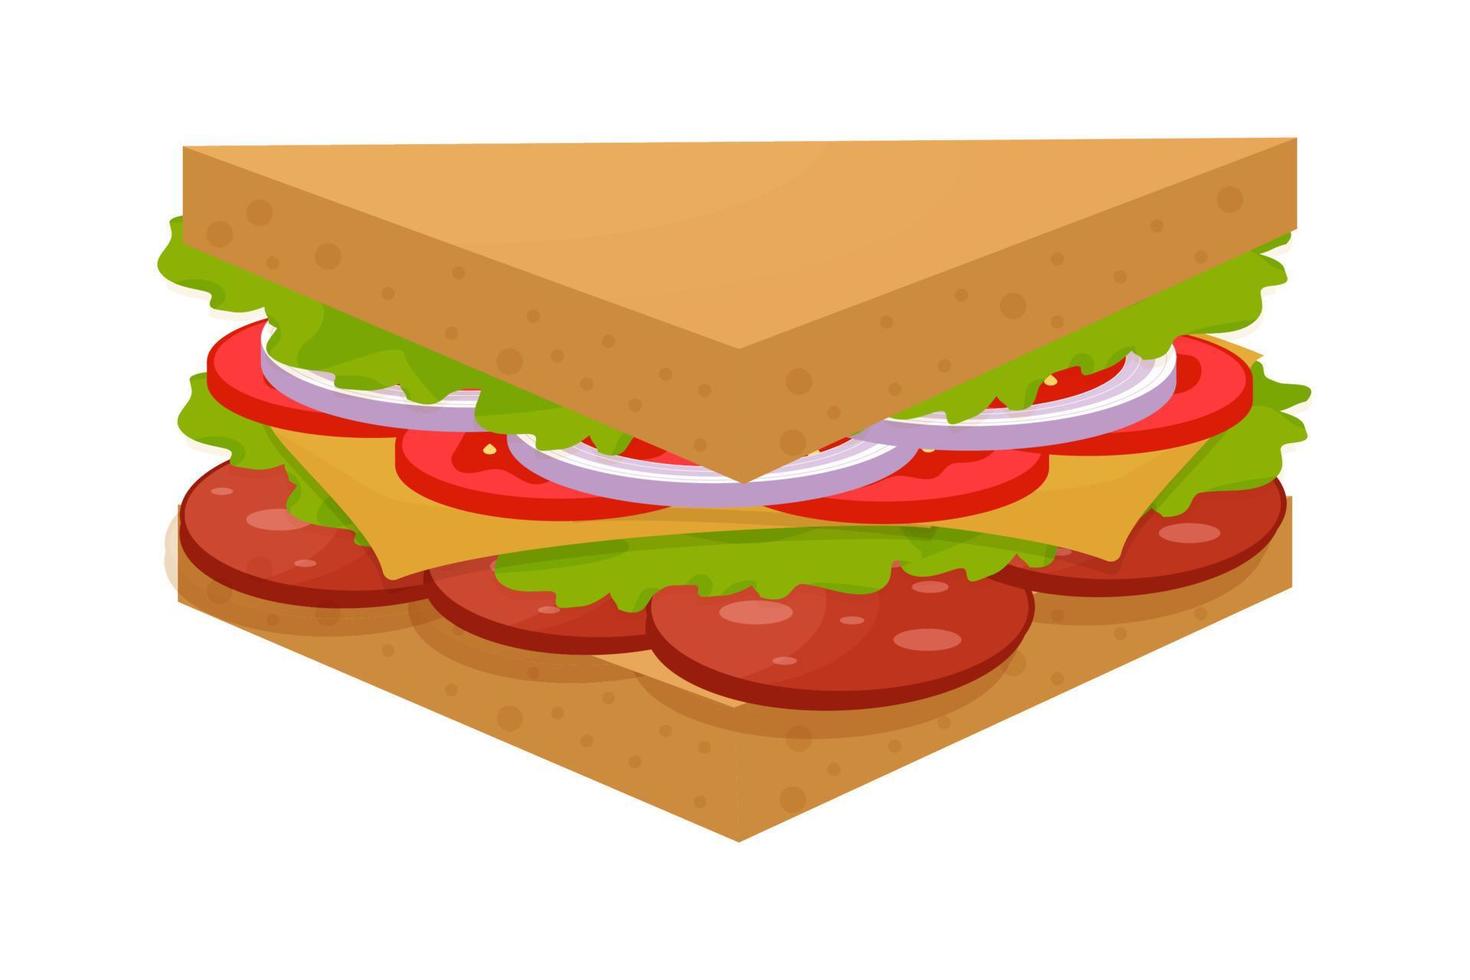 saboroso, delicioso sanduíche de triângulo, colorido e detalhado isolado no fundo branco. ingredientes de salame, folhas verdes, tomate, queijo e cebola. ilustração vetorial vetor